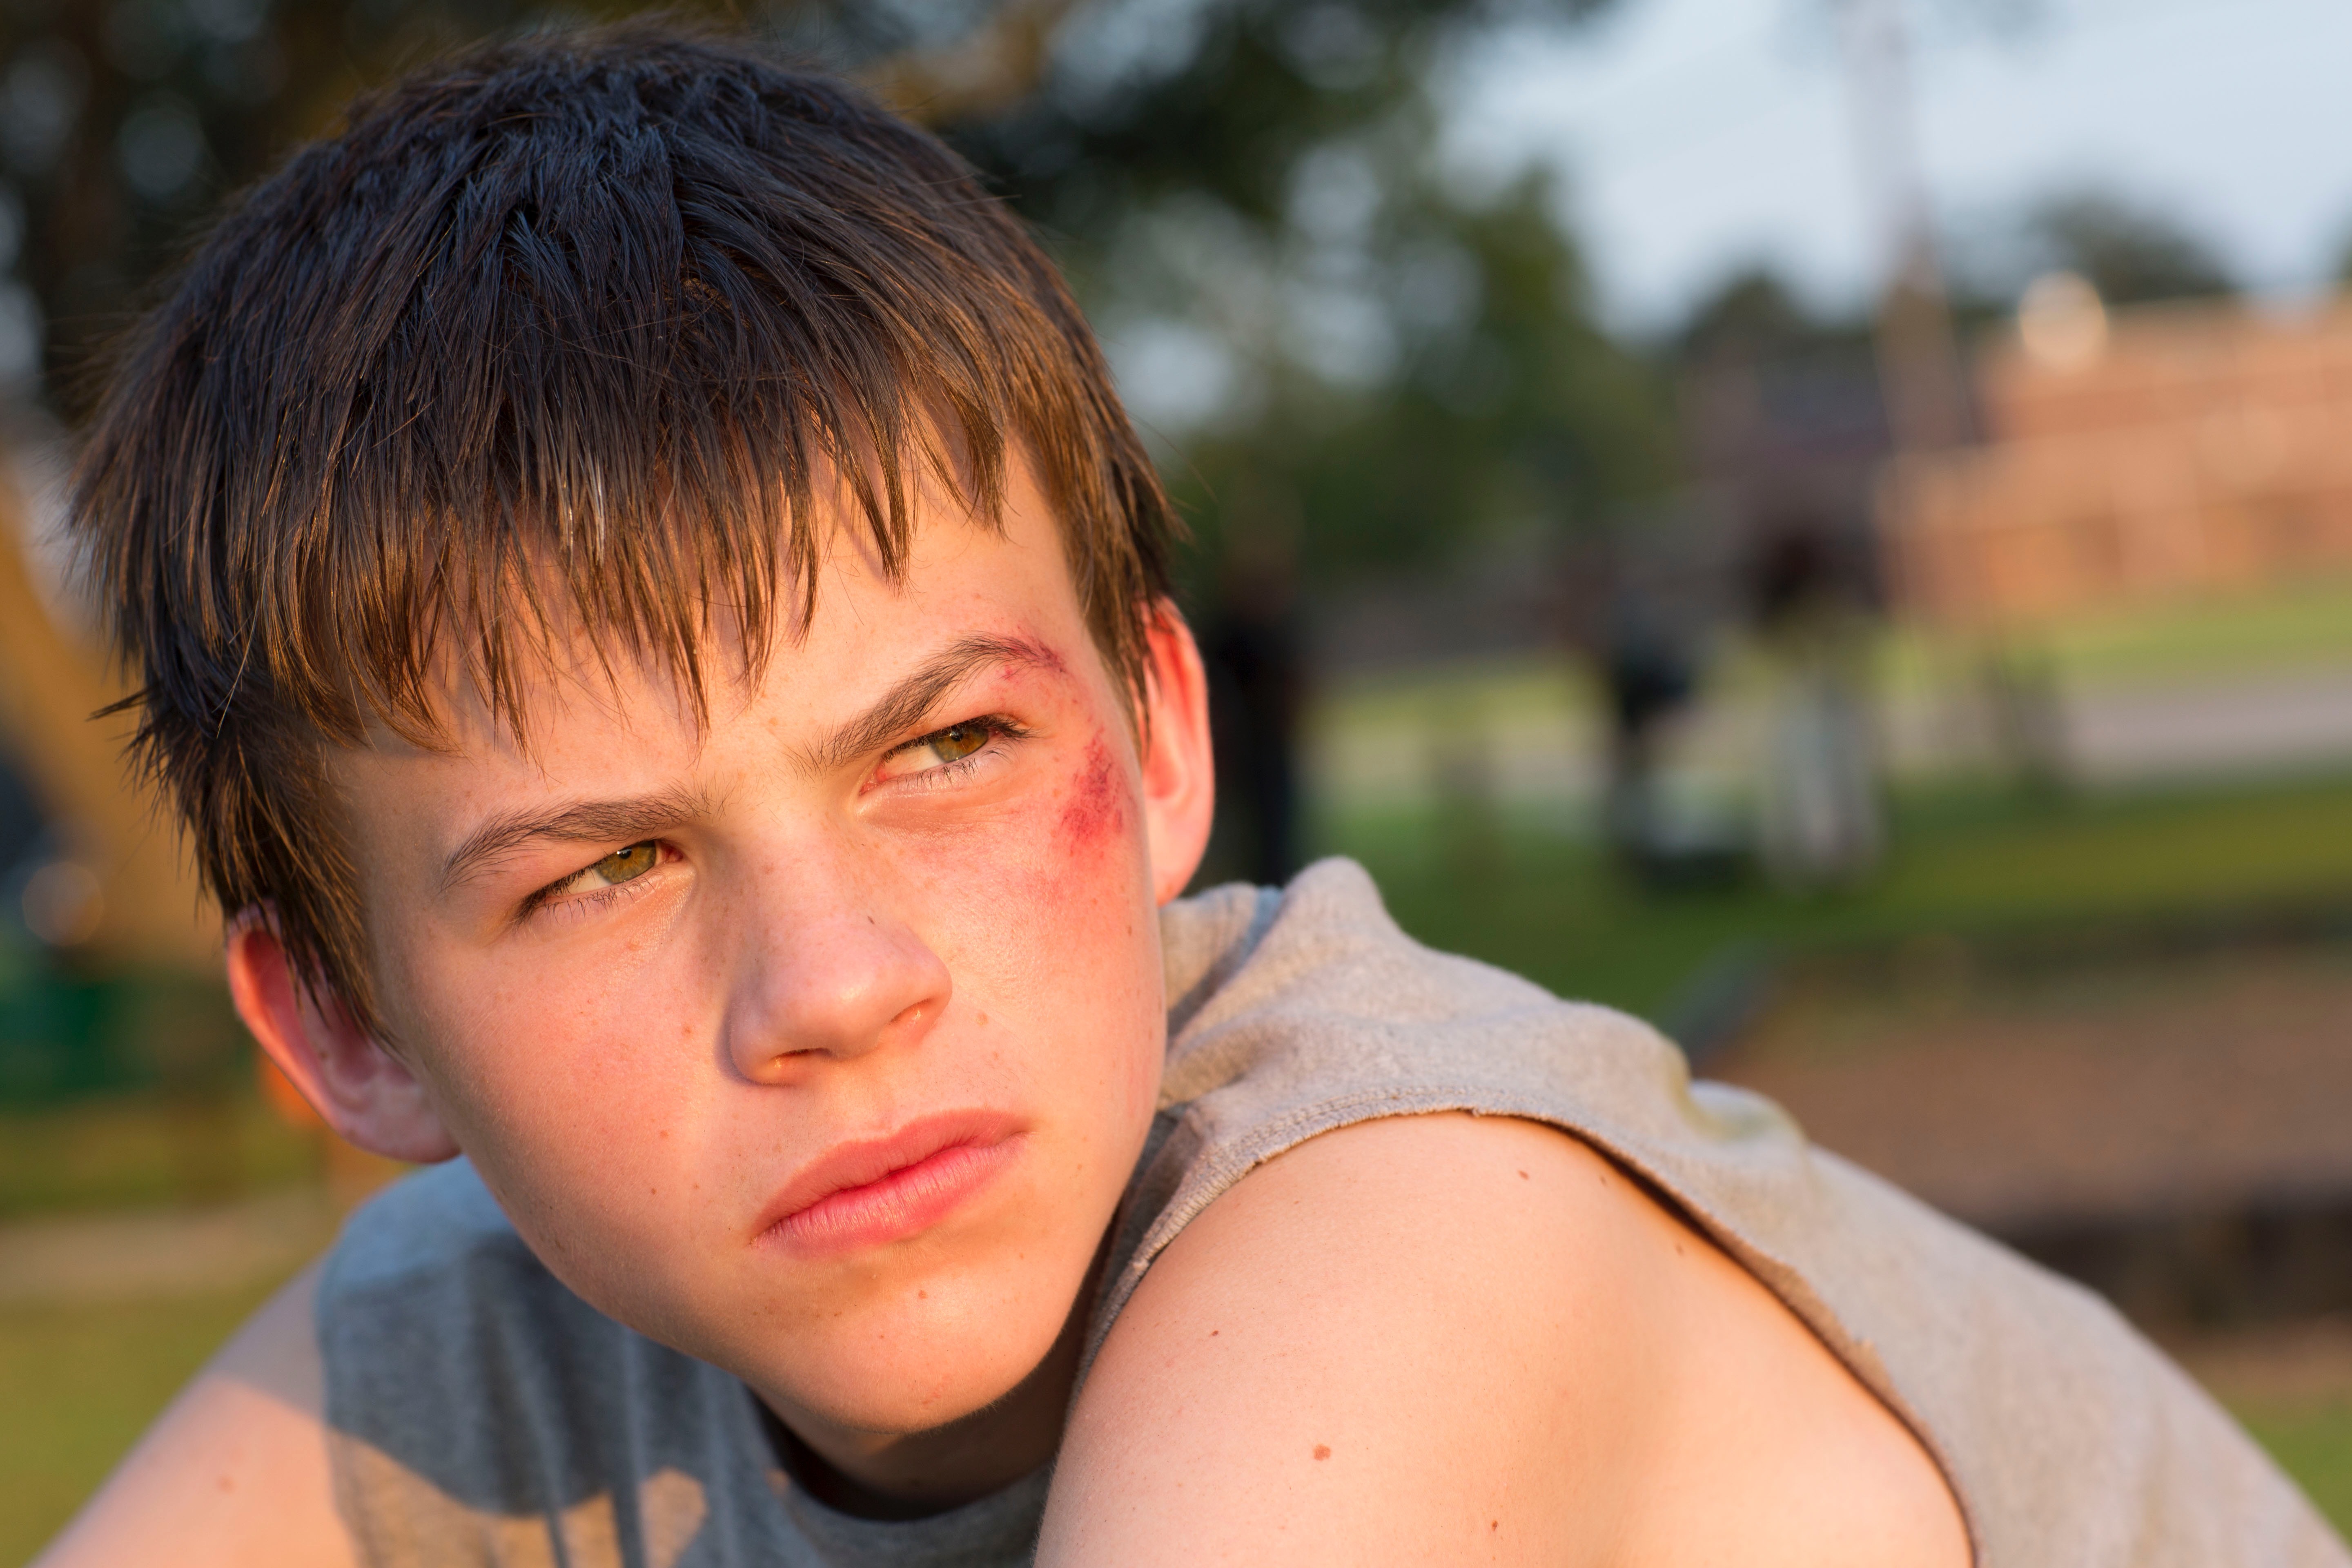 Мальчик лет пятнадцати герой. Лукас Роэлс мальчик. Портрет подростка. Лицо подростка.